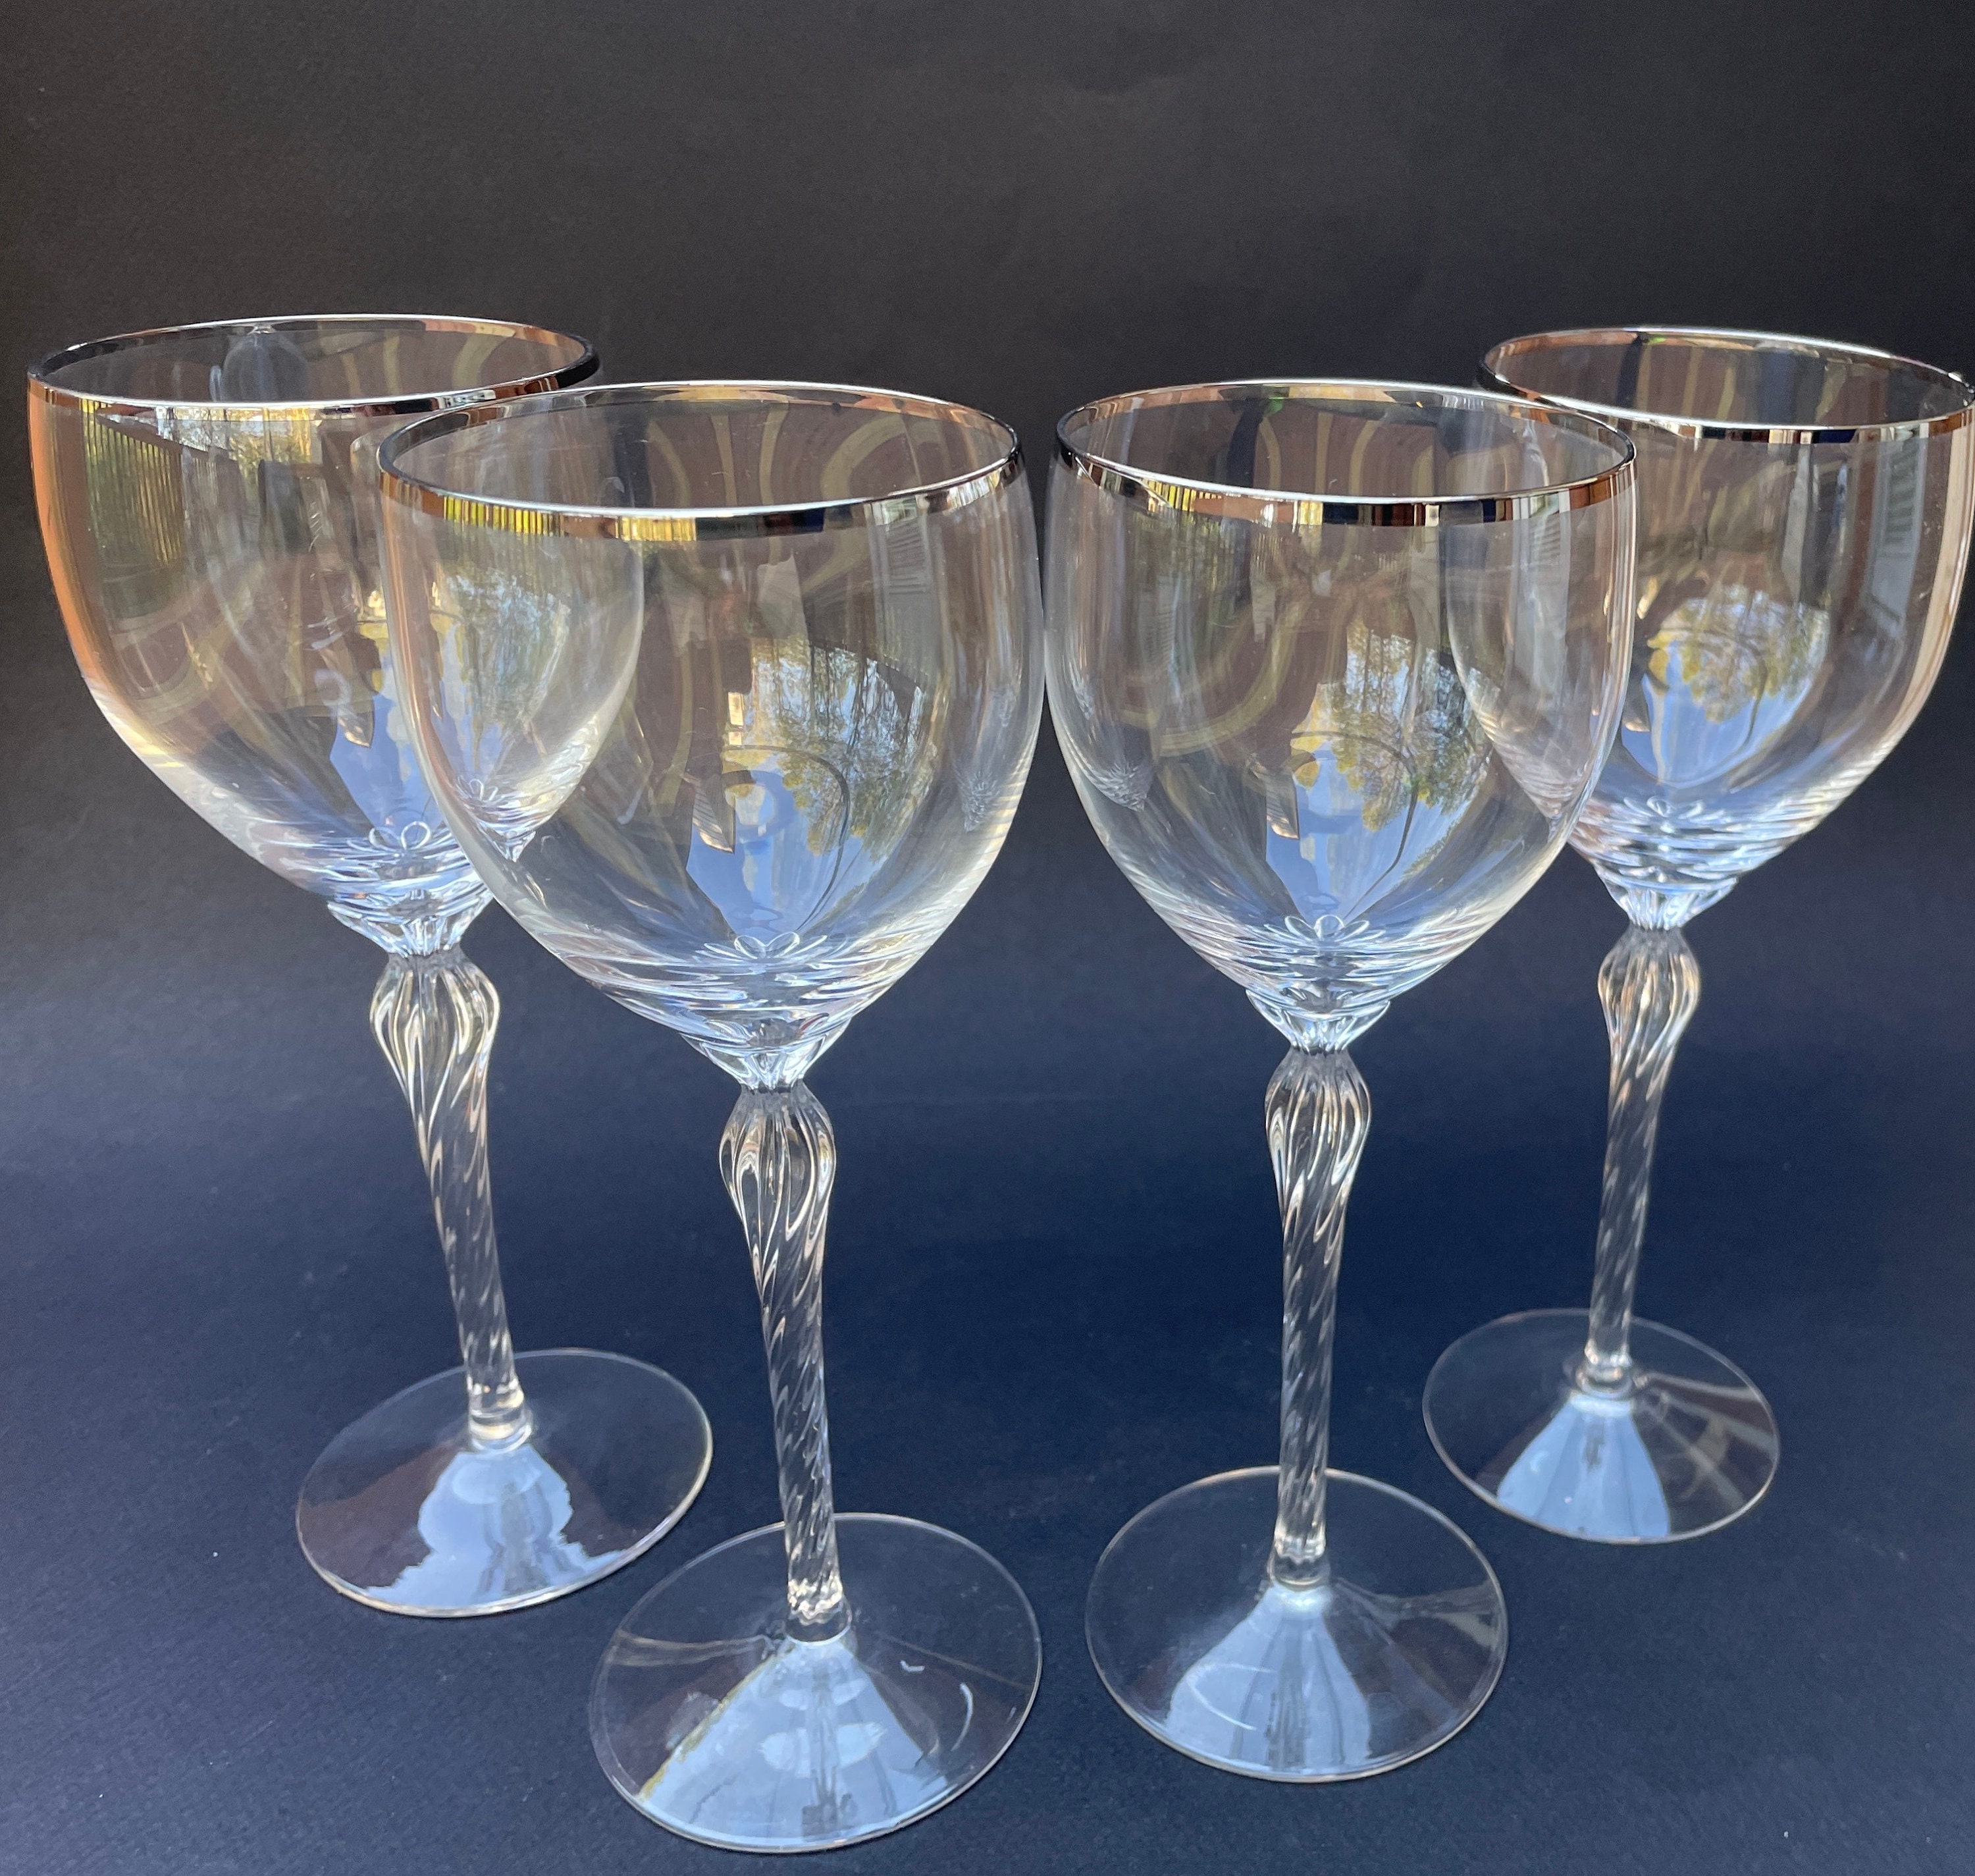 Lenox Atrium Crystal Glasses, Set of 2 Wine Glasses, Vintage